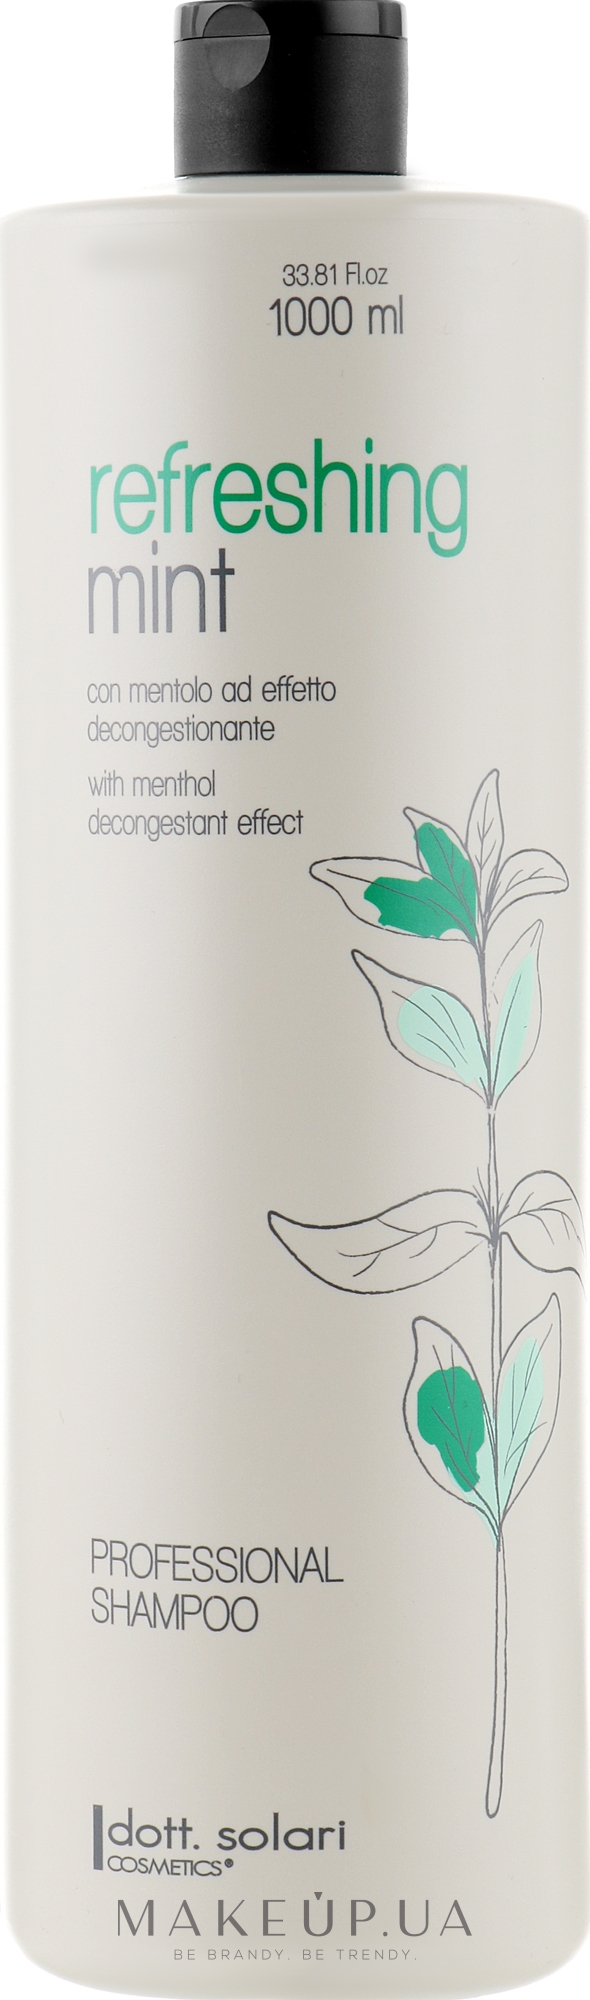 Професиональный шампунь со свежей мятой - Dott. Solari Refreshing Mint Shampoo — фото 1000ml